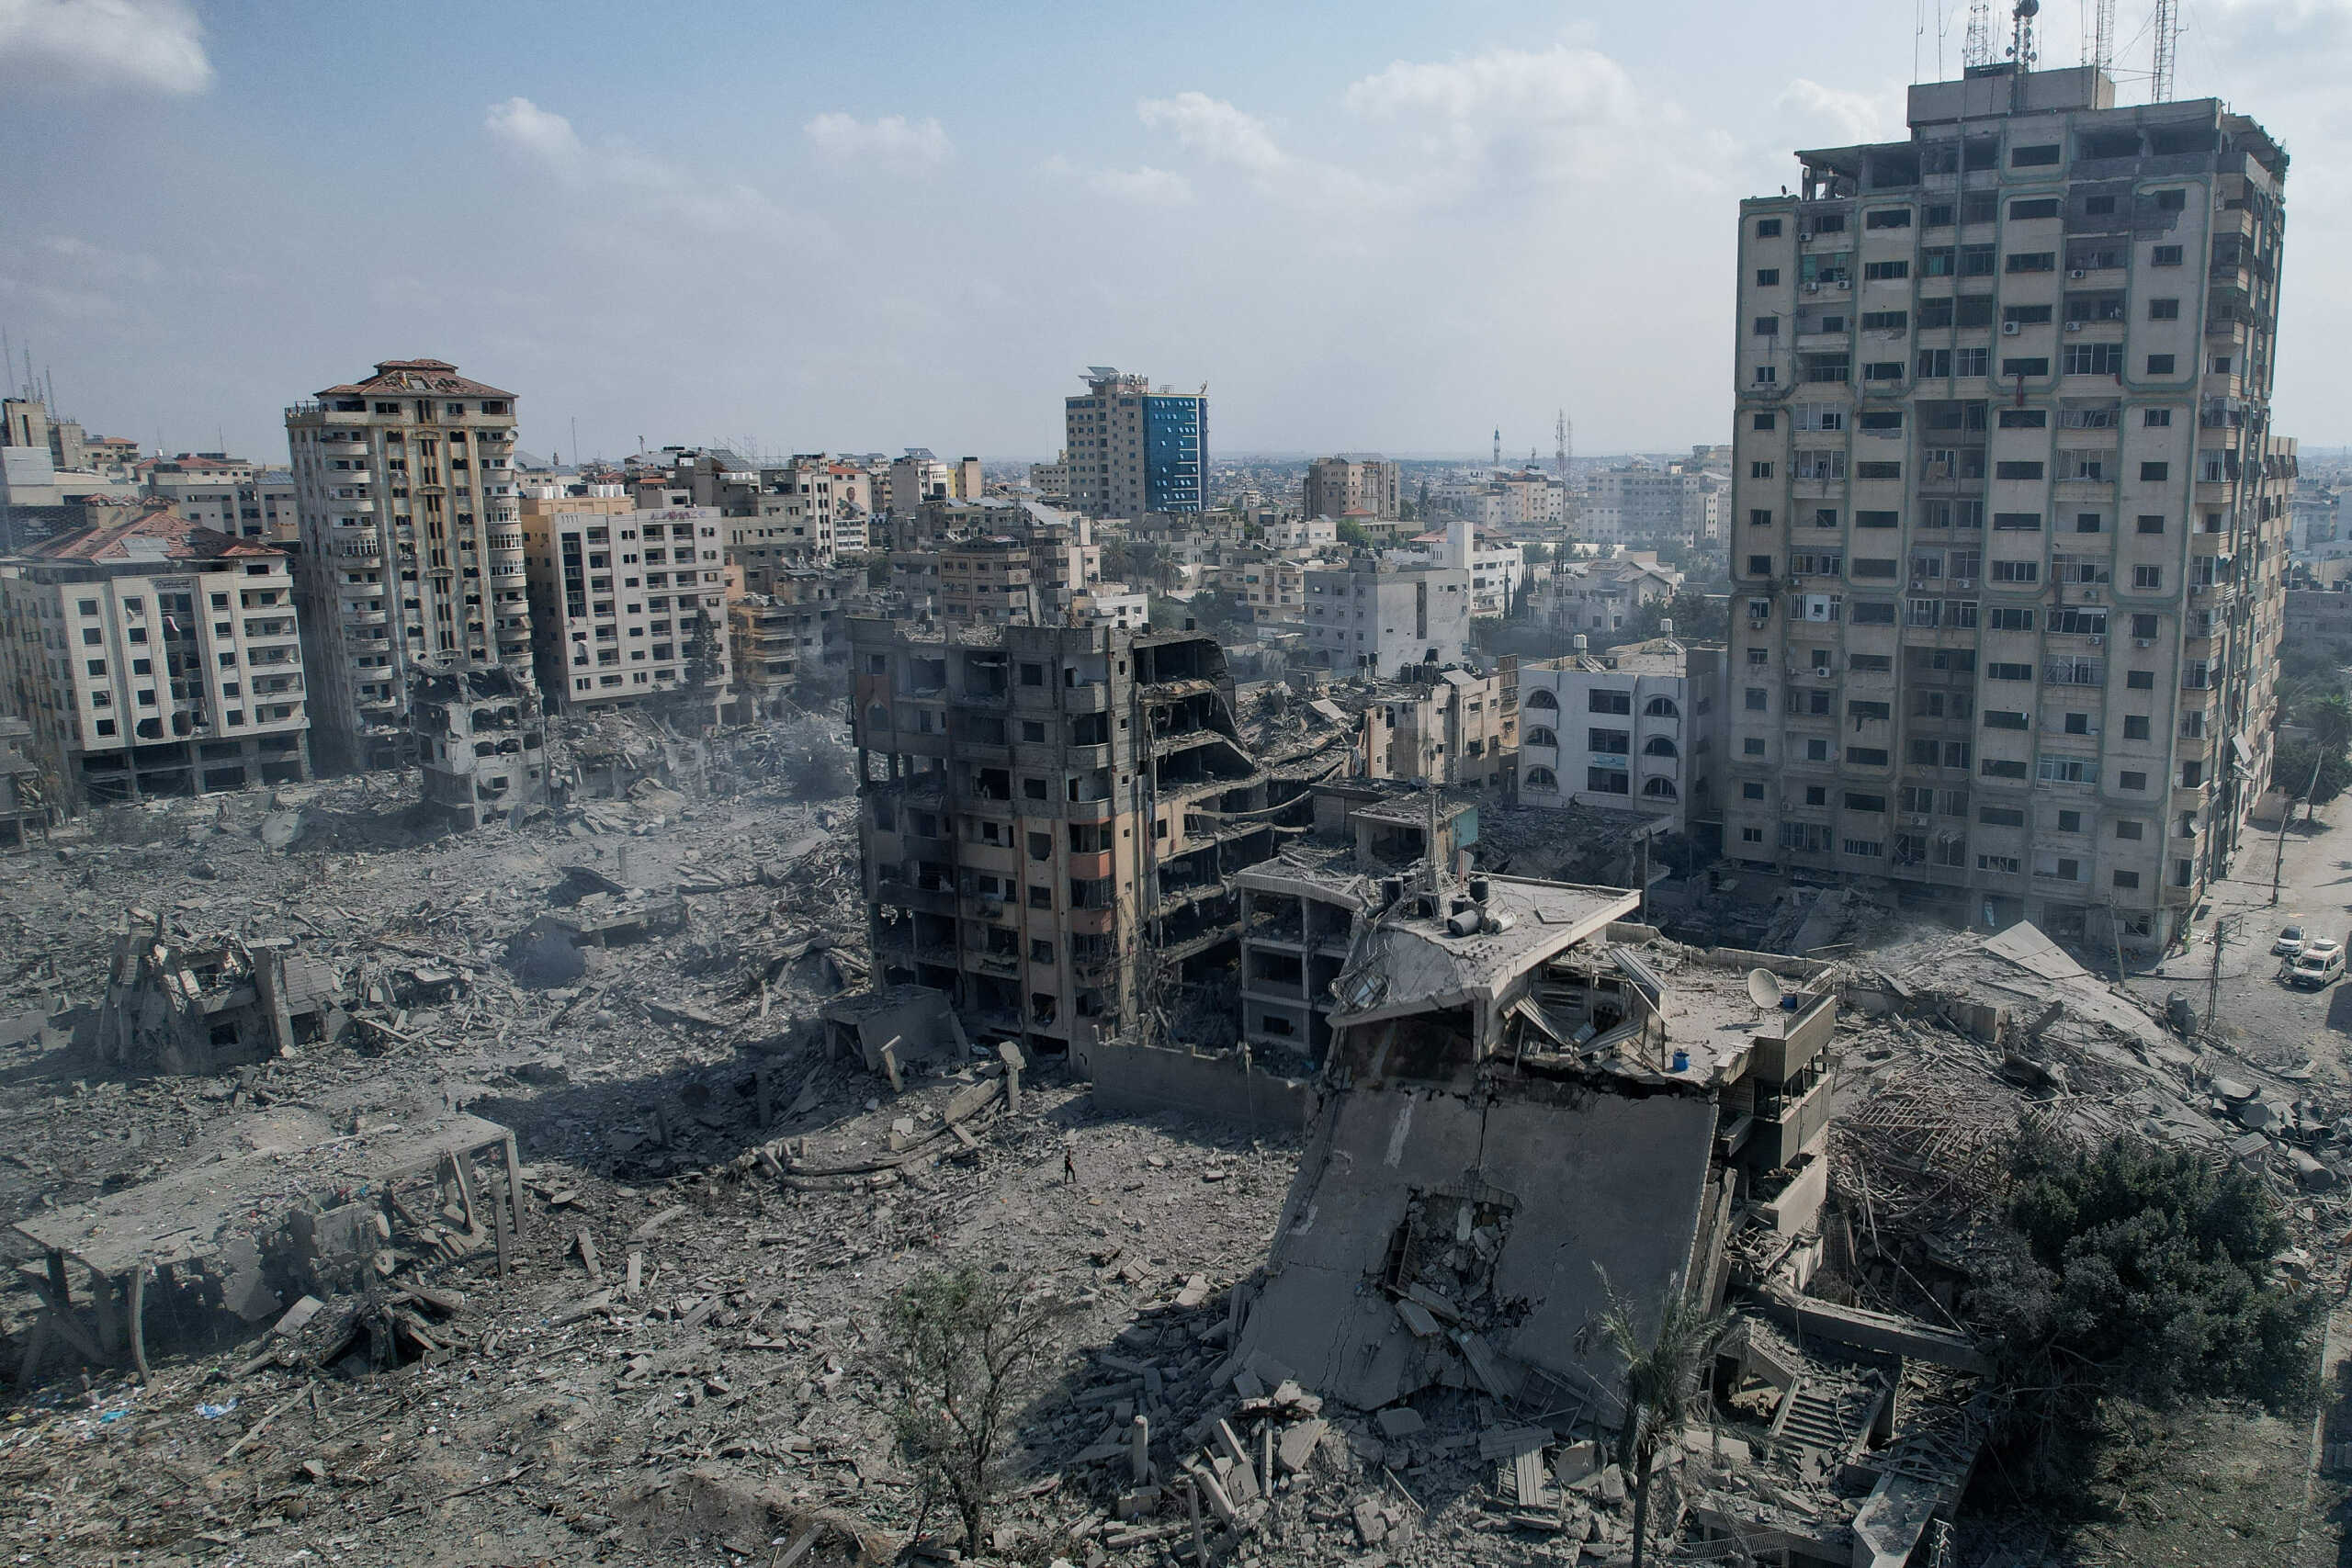 Πόλεμος στο Ισραήλ: Η πλήρης πολιορκία της Λωρίδας της Γάζας απαγορεύεται σύμφωνα με το διεθνές δίκαιο